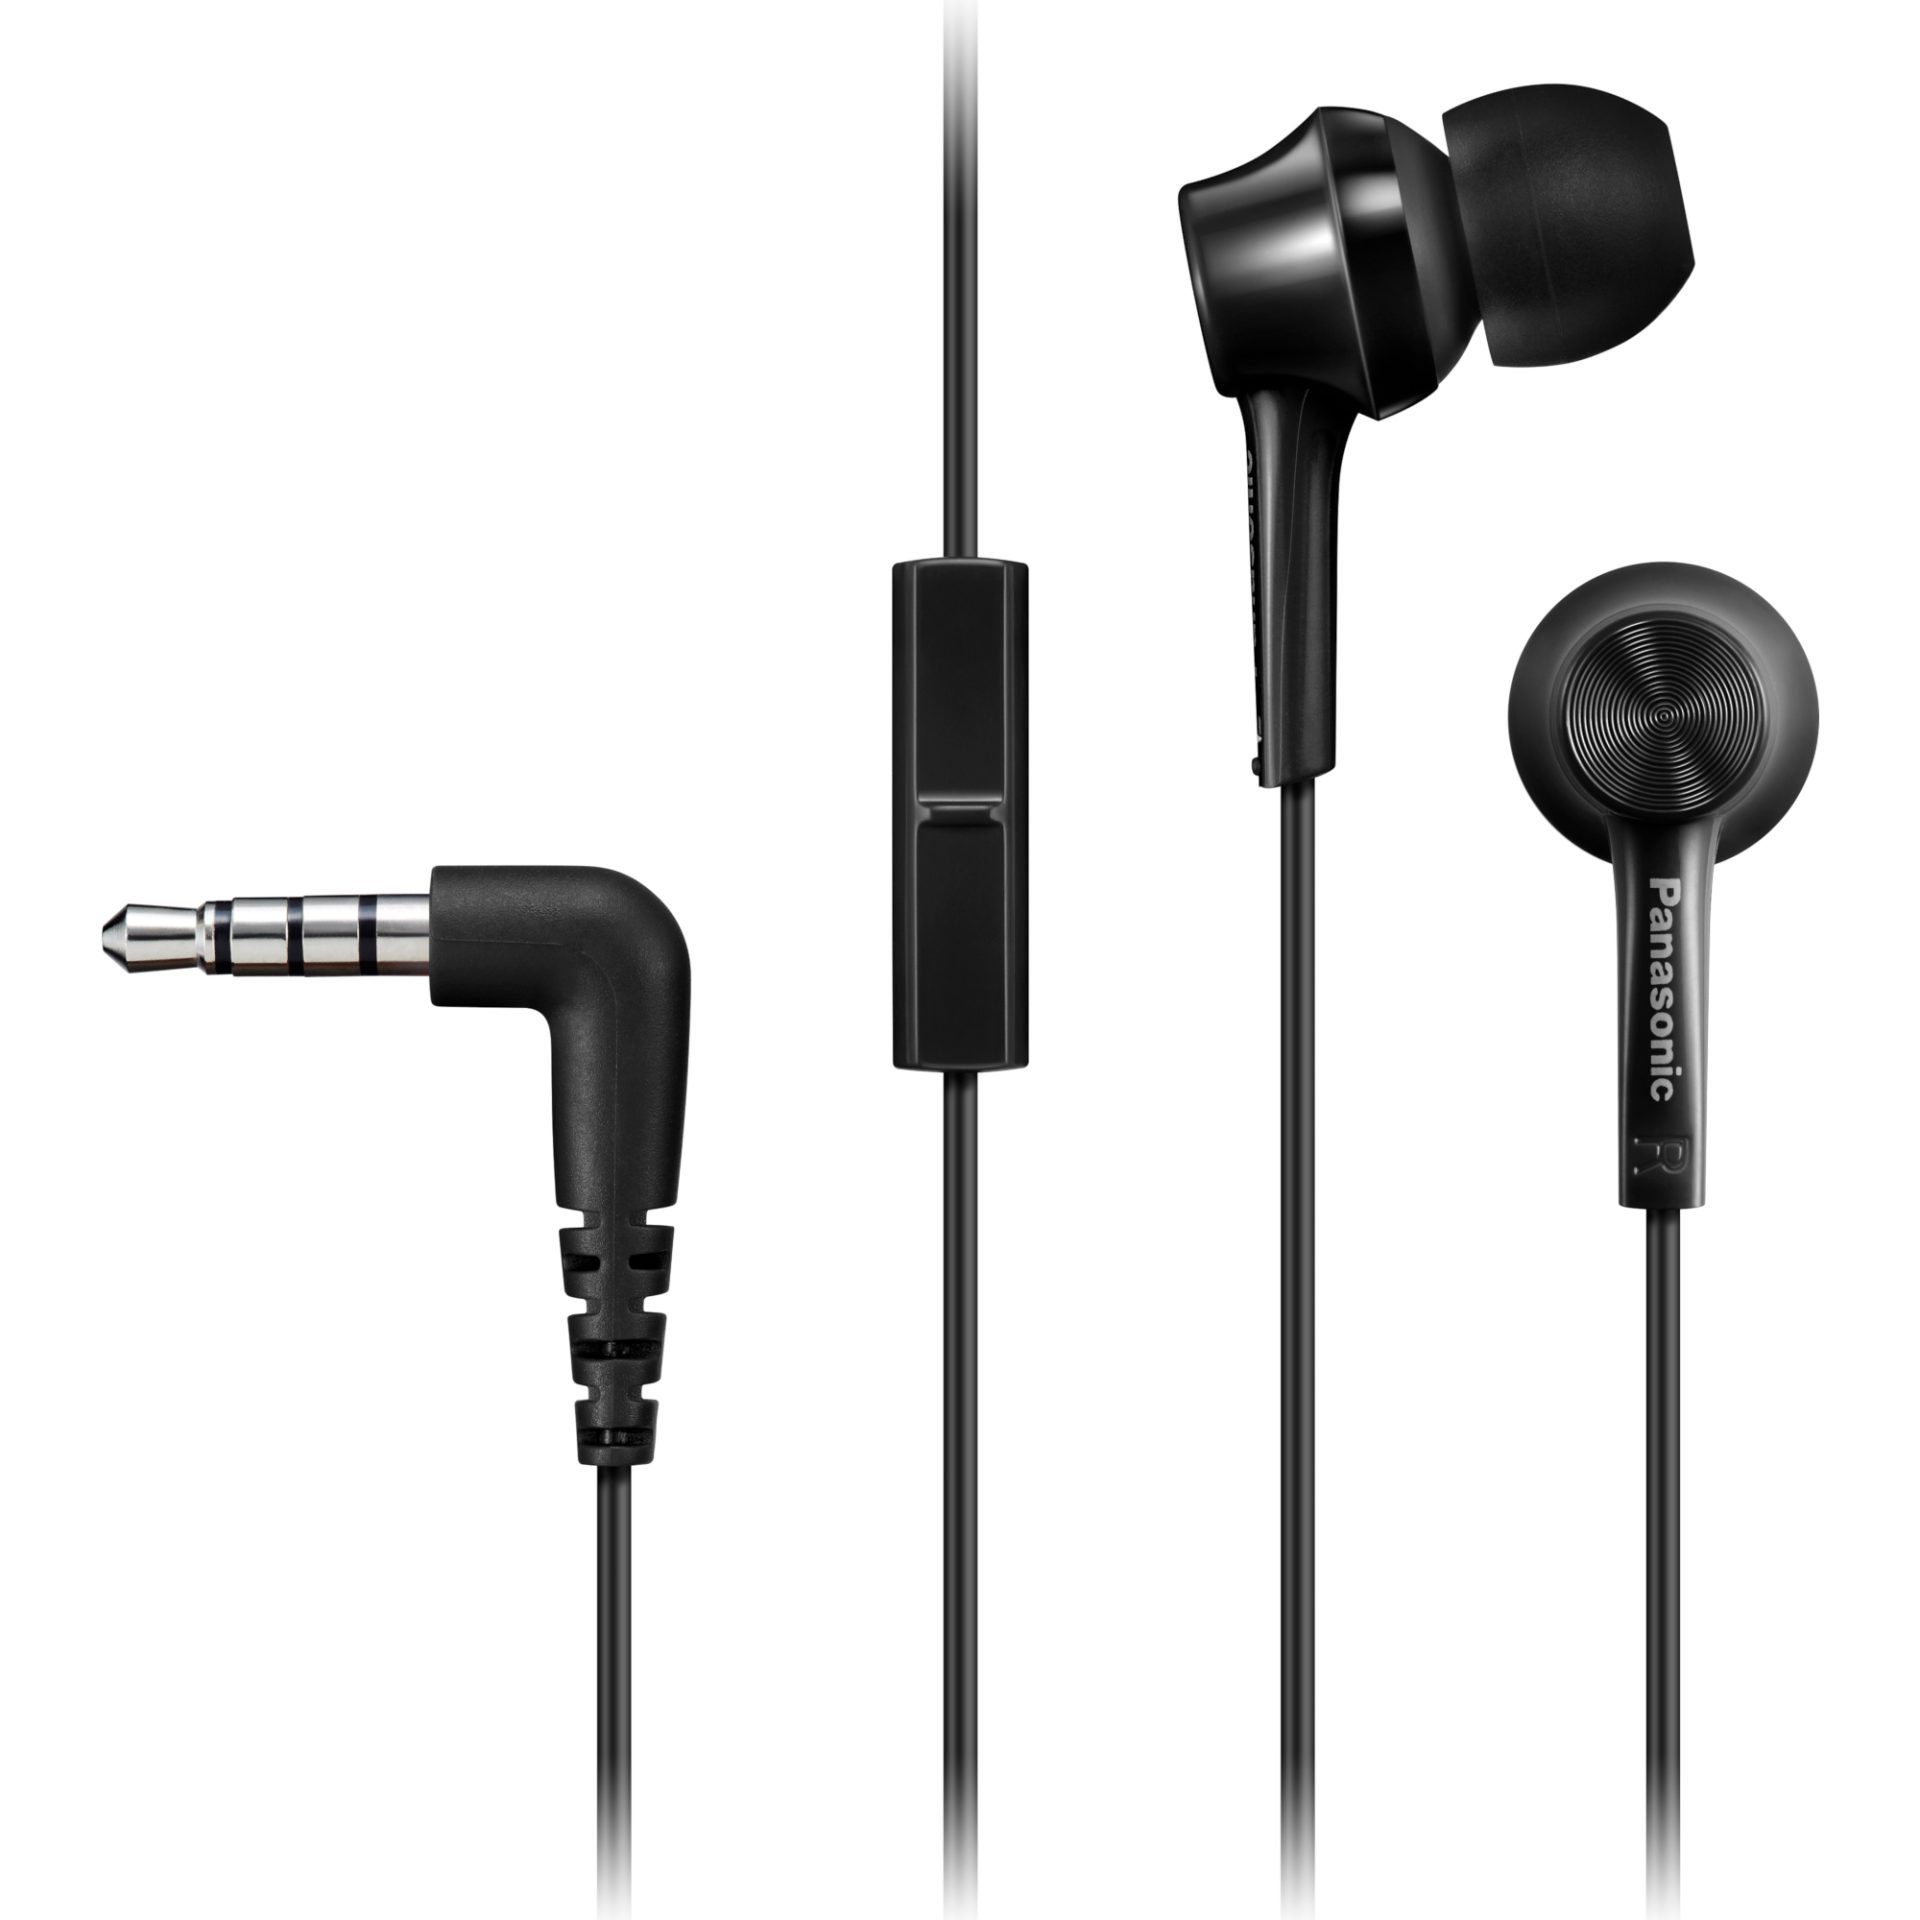 Panasonic RP-TCM115 ergonomická sluchátka do uší (9mm měniče, výkonné basy, mikrofon a dálkové ovládání v kabelu, kabel 1,2m, pohodlné nošení), černá